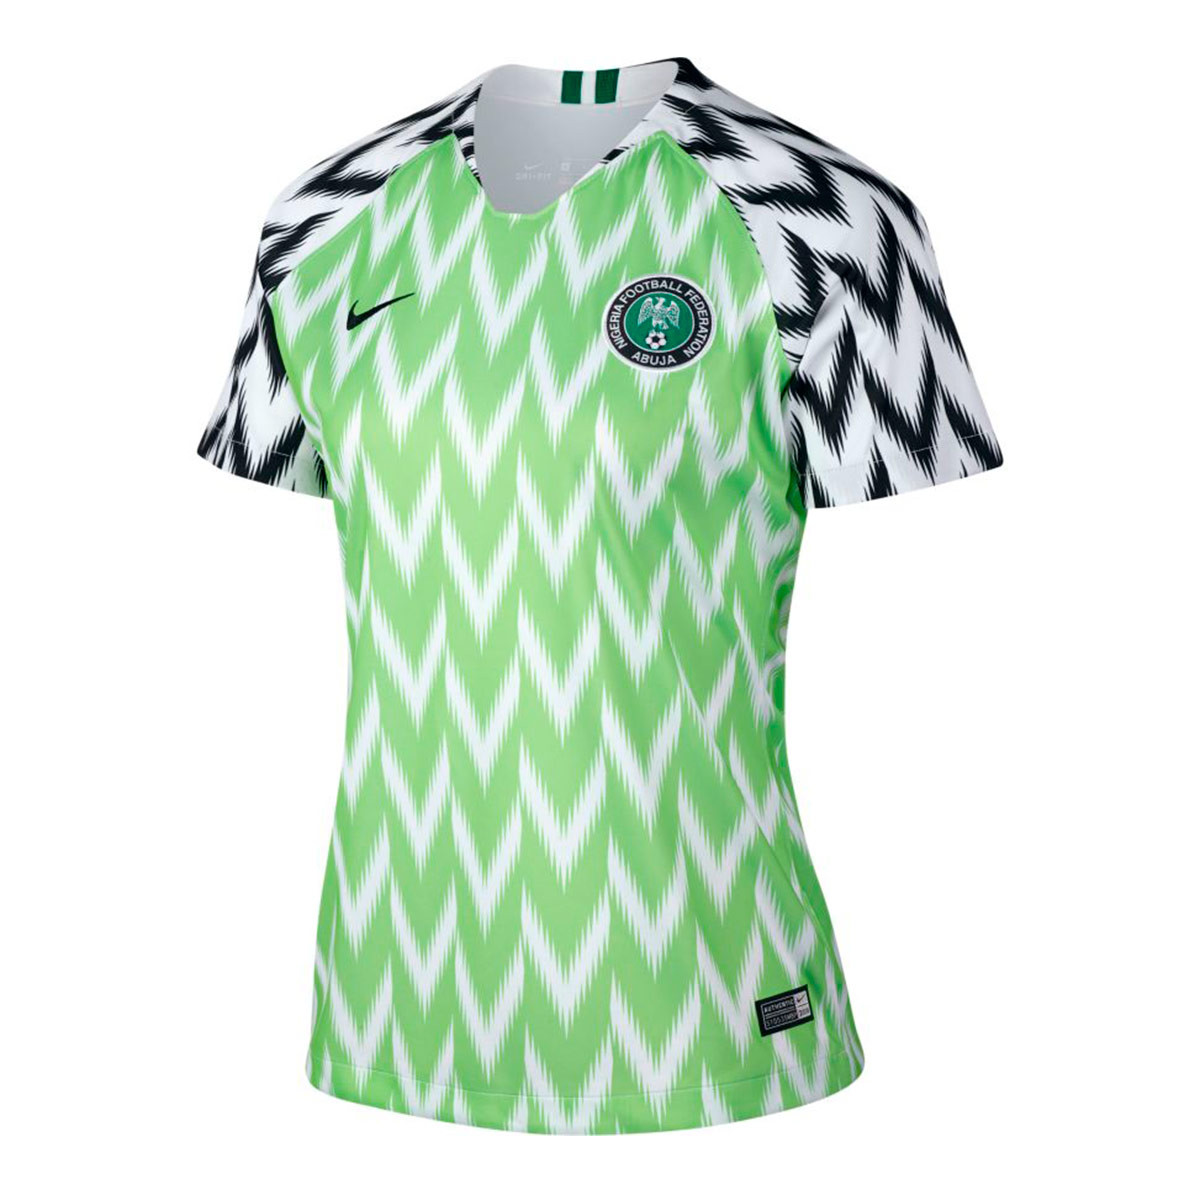 Calumnia raya amistad Shop Camiseta Nigeria 2018 | UP TO 55% OFF